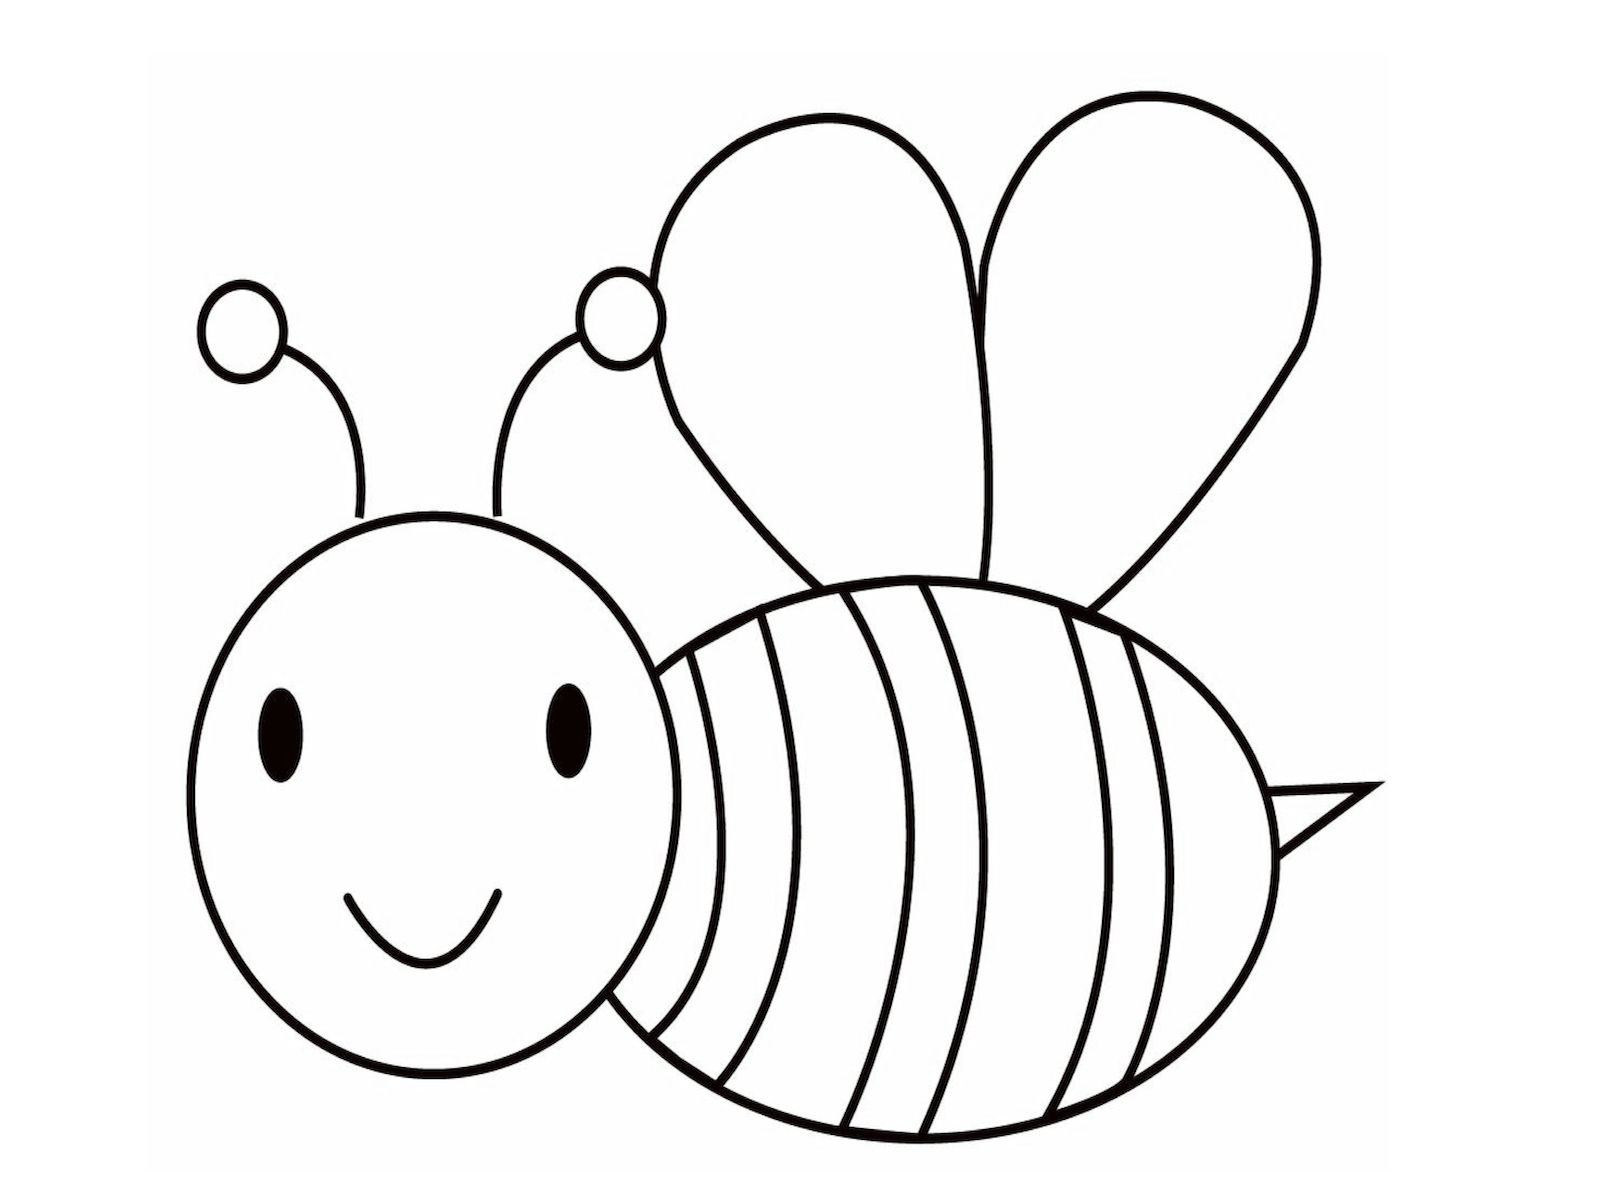 Пчелка раскраска распечатать. Пчела раскраска для детей. Пчелка раскраска для малышей. Пчелка для раскрашивания детям. Раскраска пчёлка для детей.